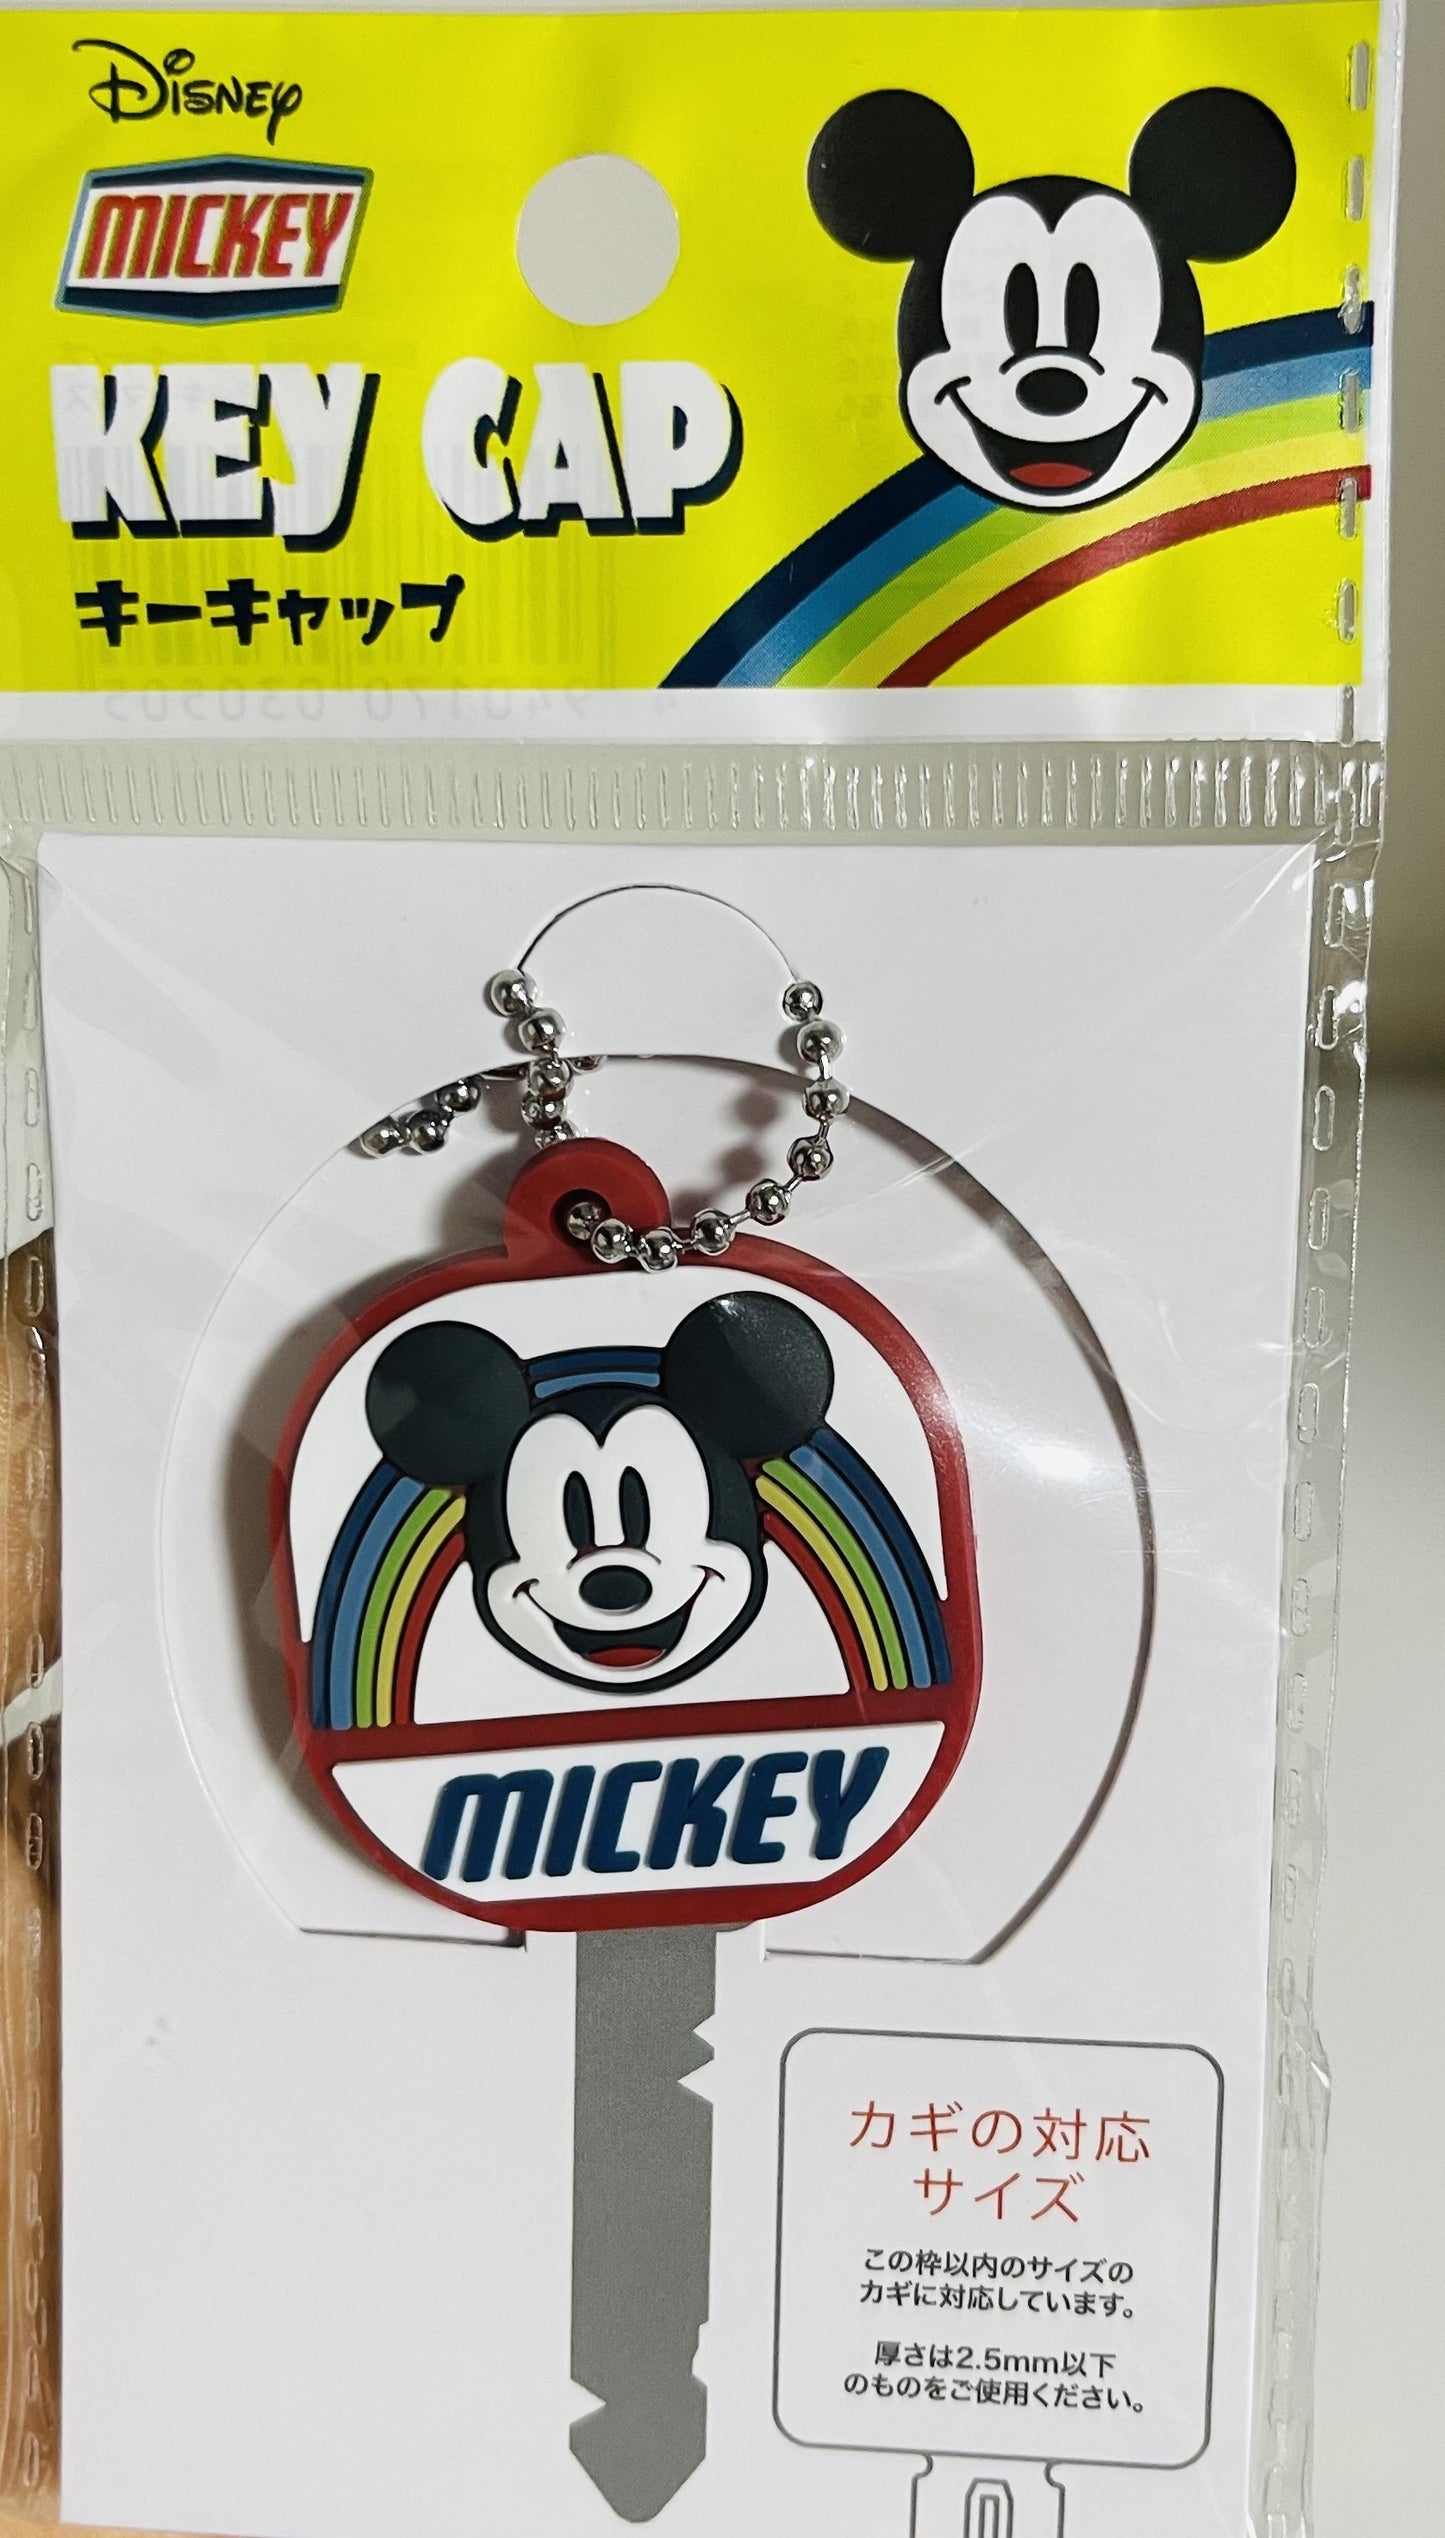 Key Cap Mickey & Minnie